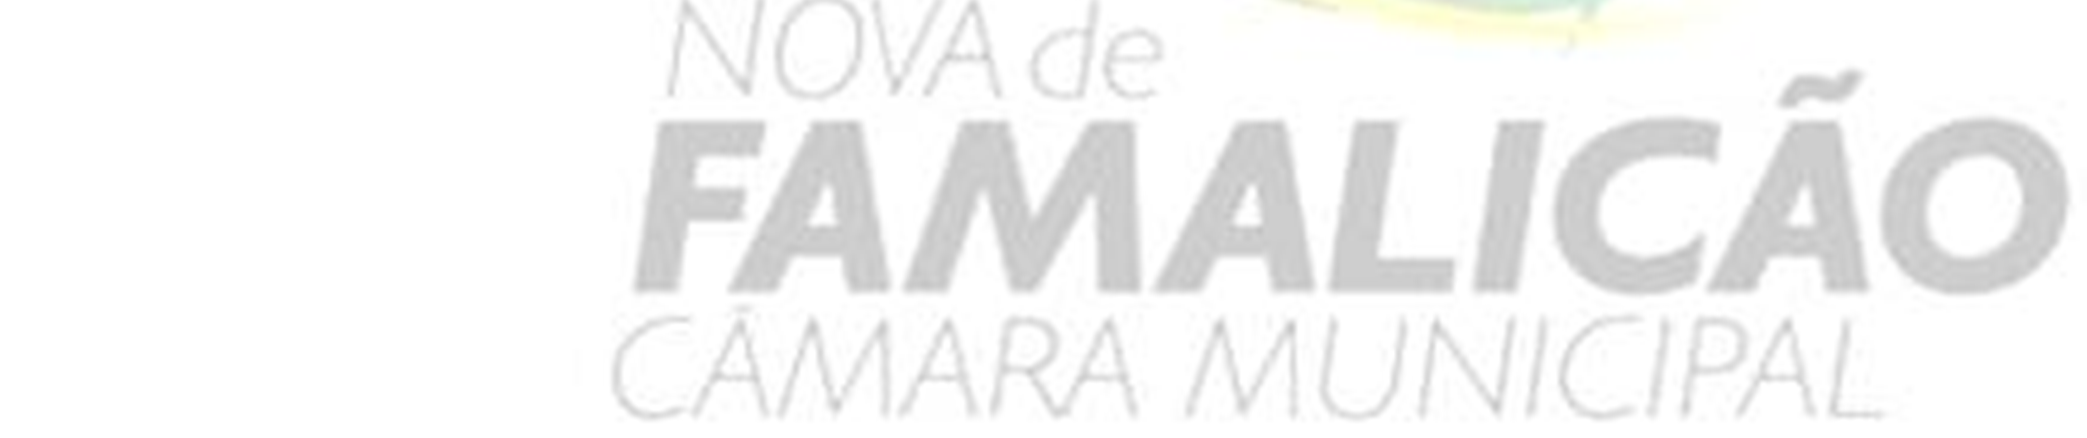 PMMEE - Vila Nova de Famalicão 2013/2014 Dimensão Central de Melhoria: ELEVADOS PADRÕES ACADÉMICOS Dimensões de Melhoria Estratégias Desenvolvimento da Literacia Desenvolvimento das Competências